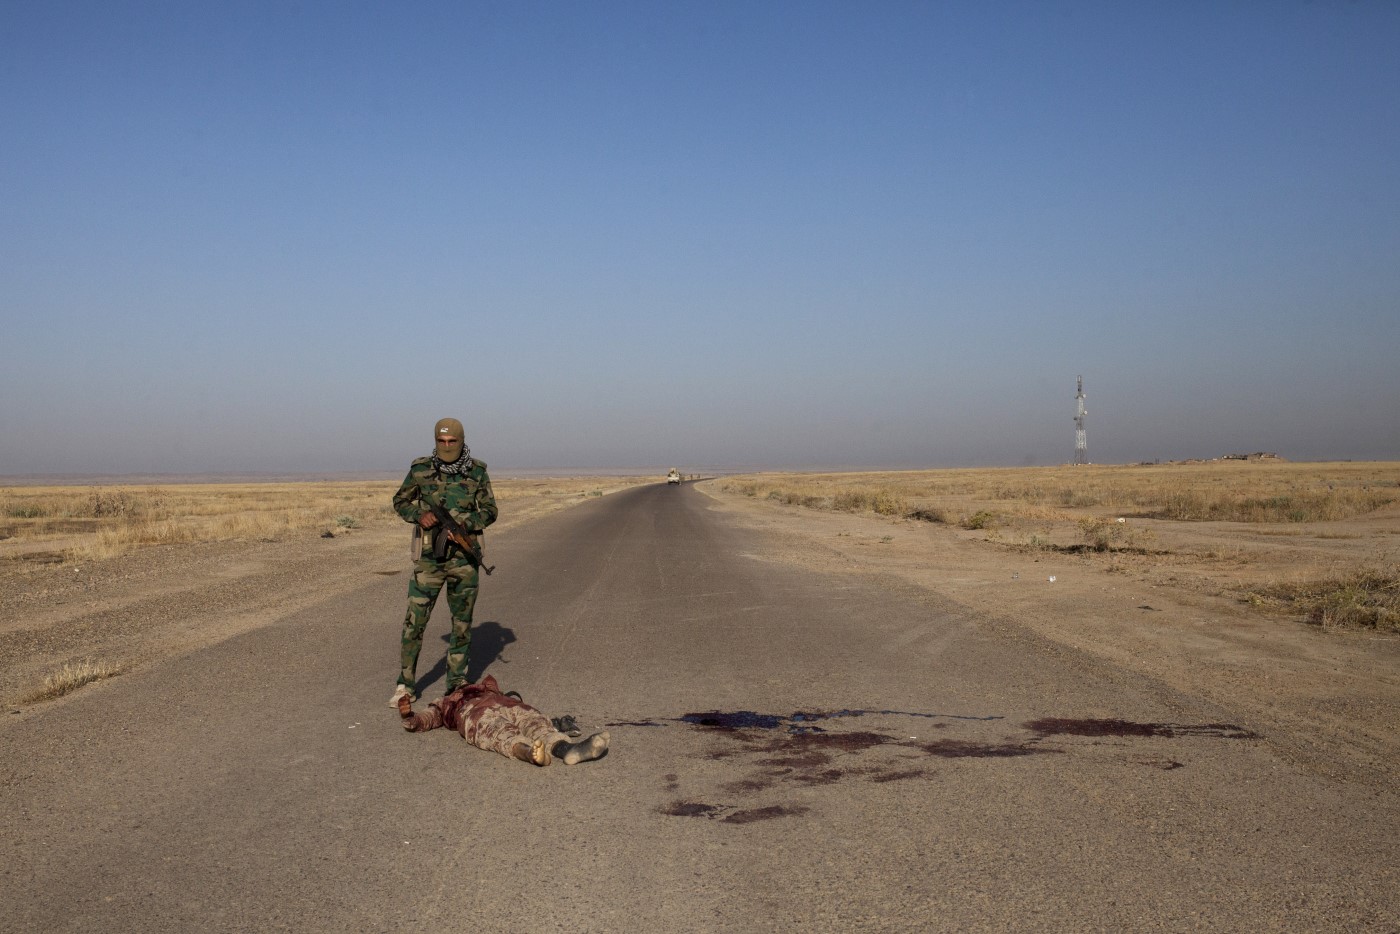 Peshmerga davant el cos sense vida d'un membre de l'Estat Islàmic pocs minuts després que aquests ataquessin la línia de front. Tuzkhurmatu, Kurdistan, Iraq. 20 de juny de 2017